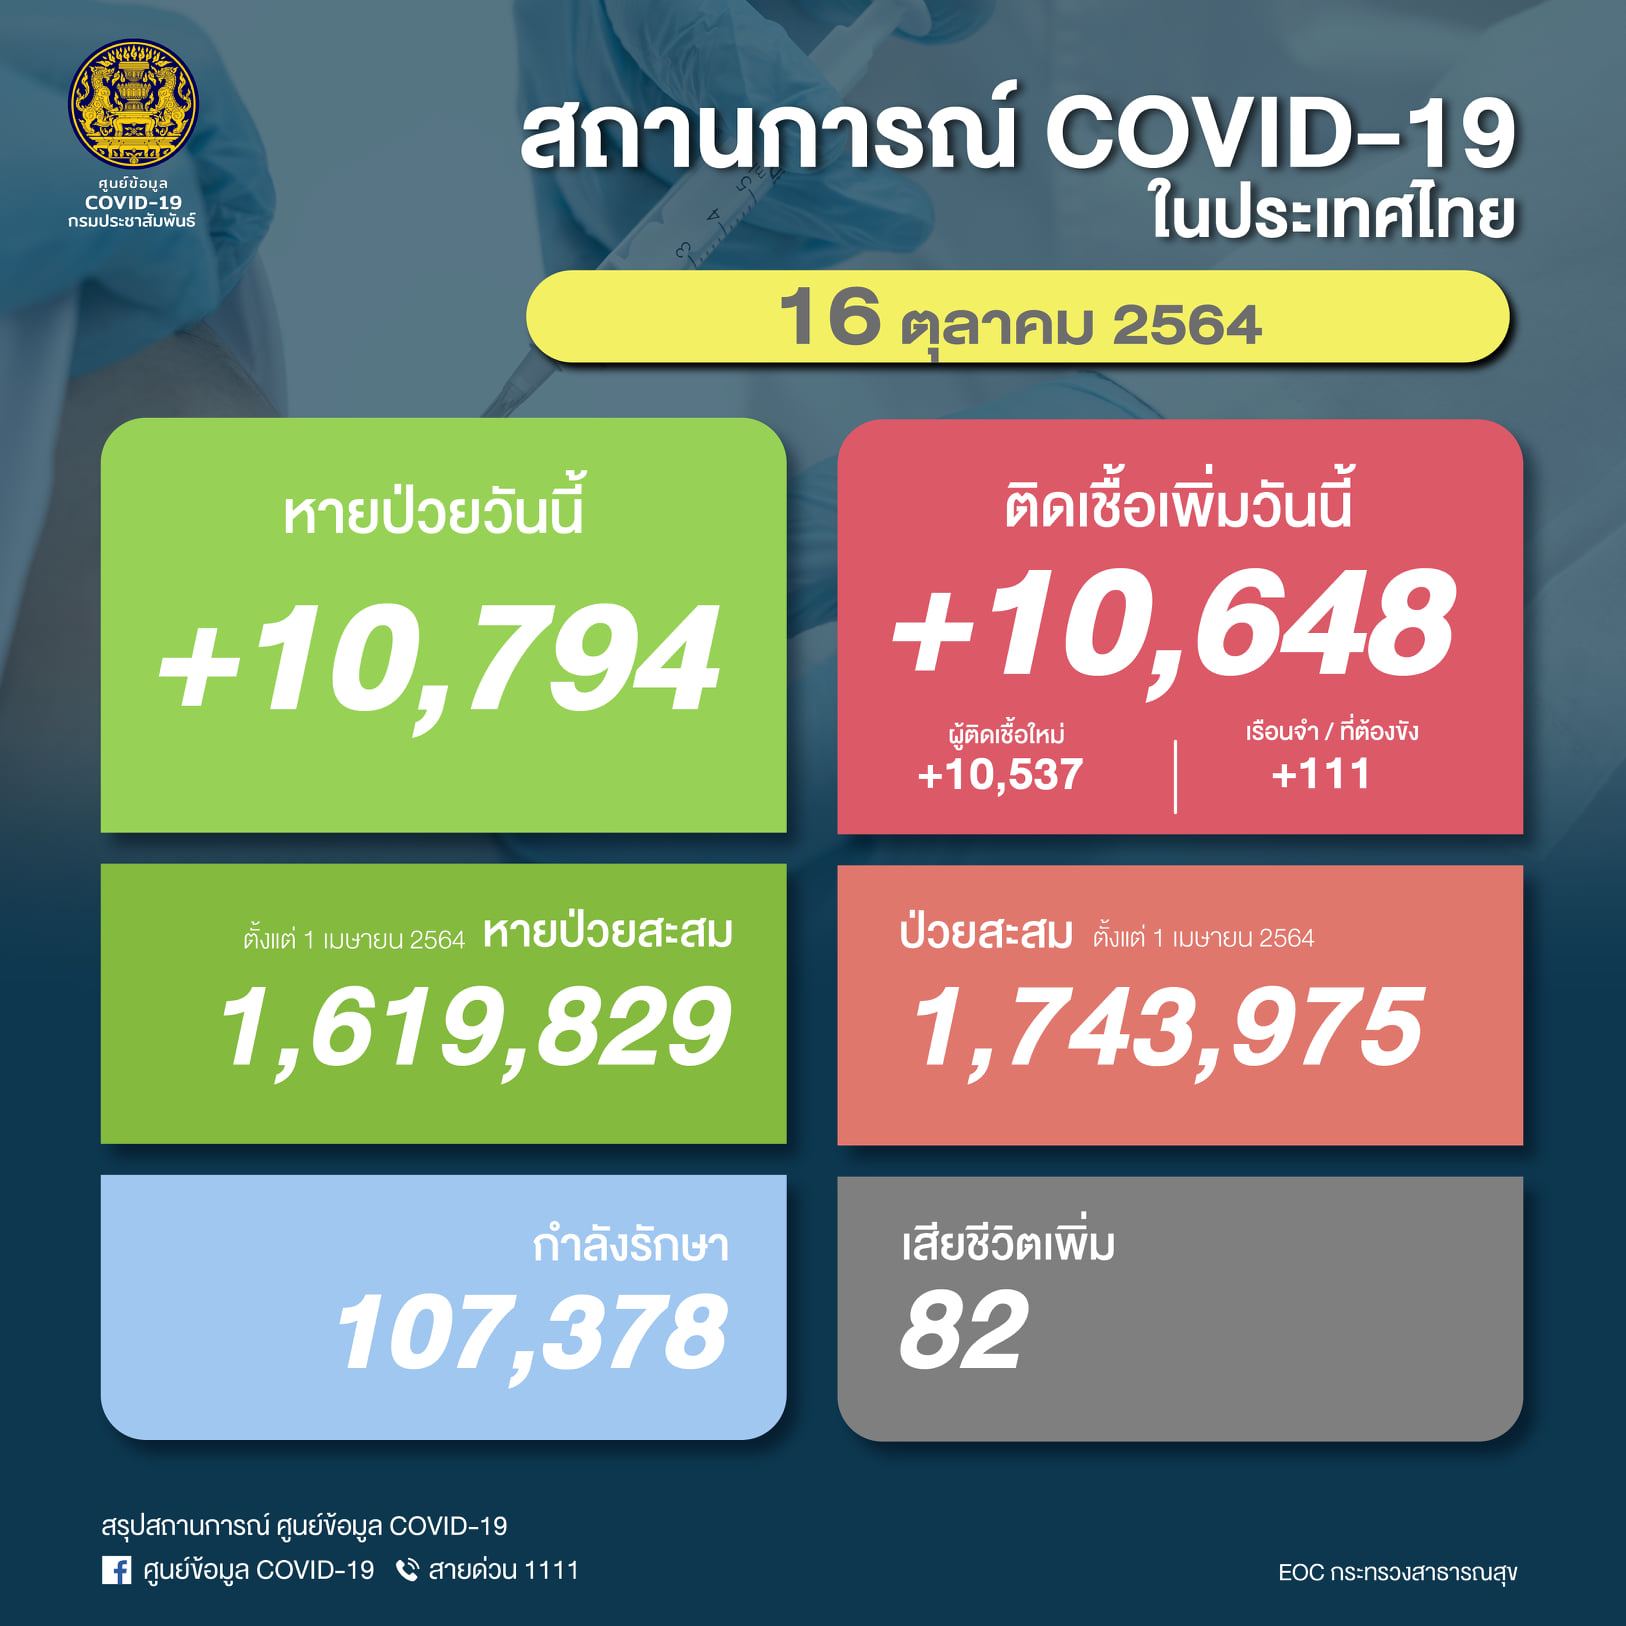 ยอดป่วยโควิดวันนี้ในไทย ติดเชื้อรายใหม่เพิ่ม 10,648 ราย เสียชีวิต 82 ราย